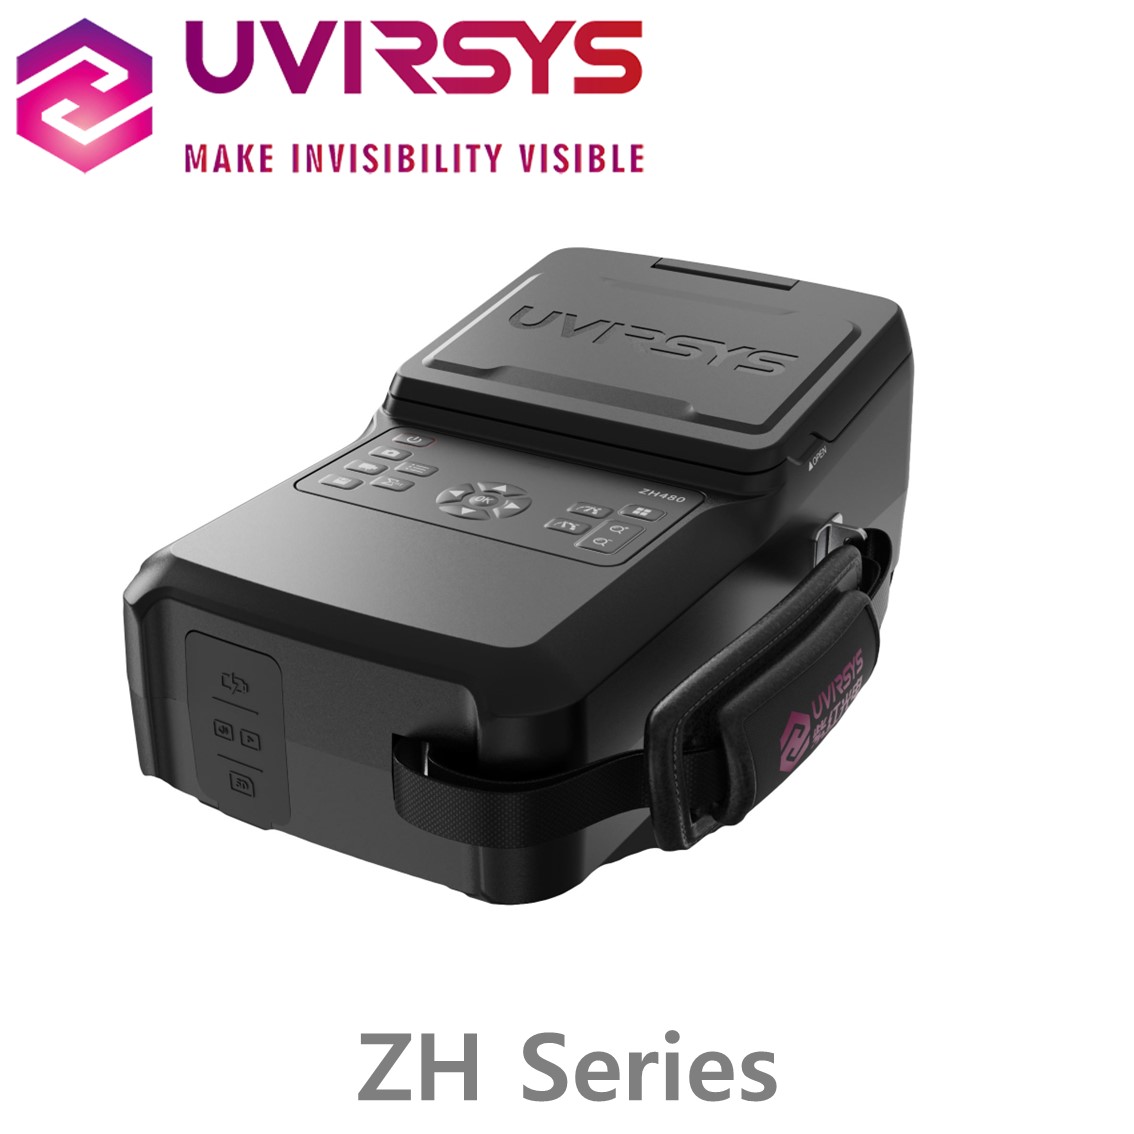 [ UVIRSYS ] ZH480, ZH580시리즈 코로나 탐지 카메라,코로나 드론, 코로나 로봇개 UV, VIS, Dual F.O.V lens